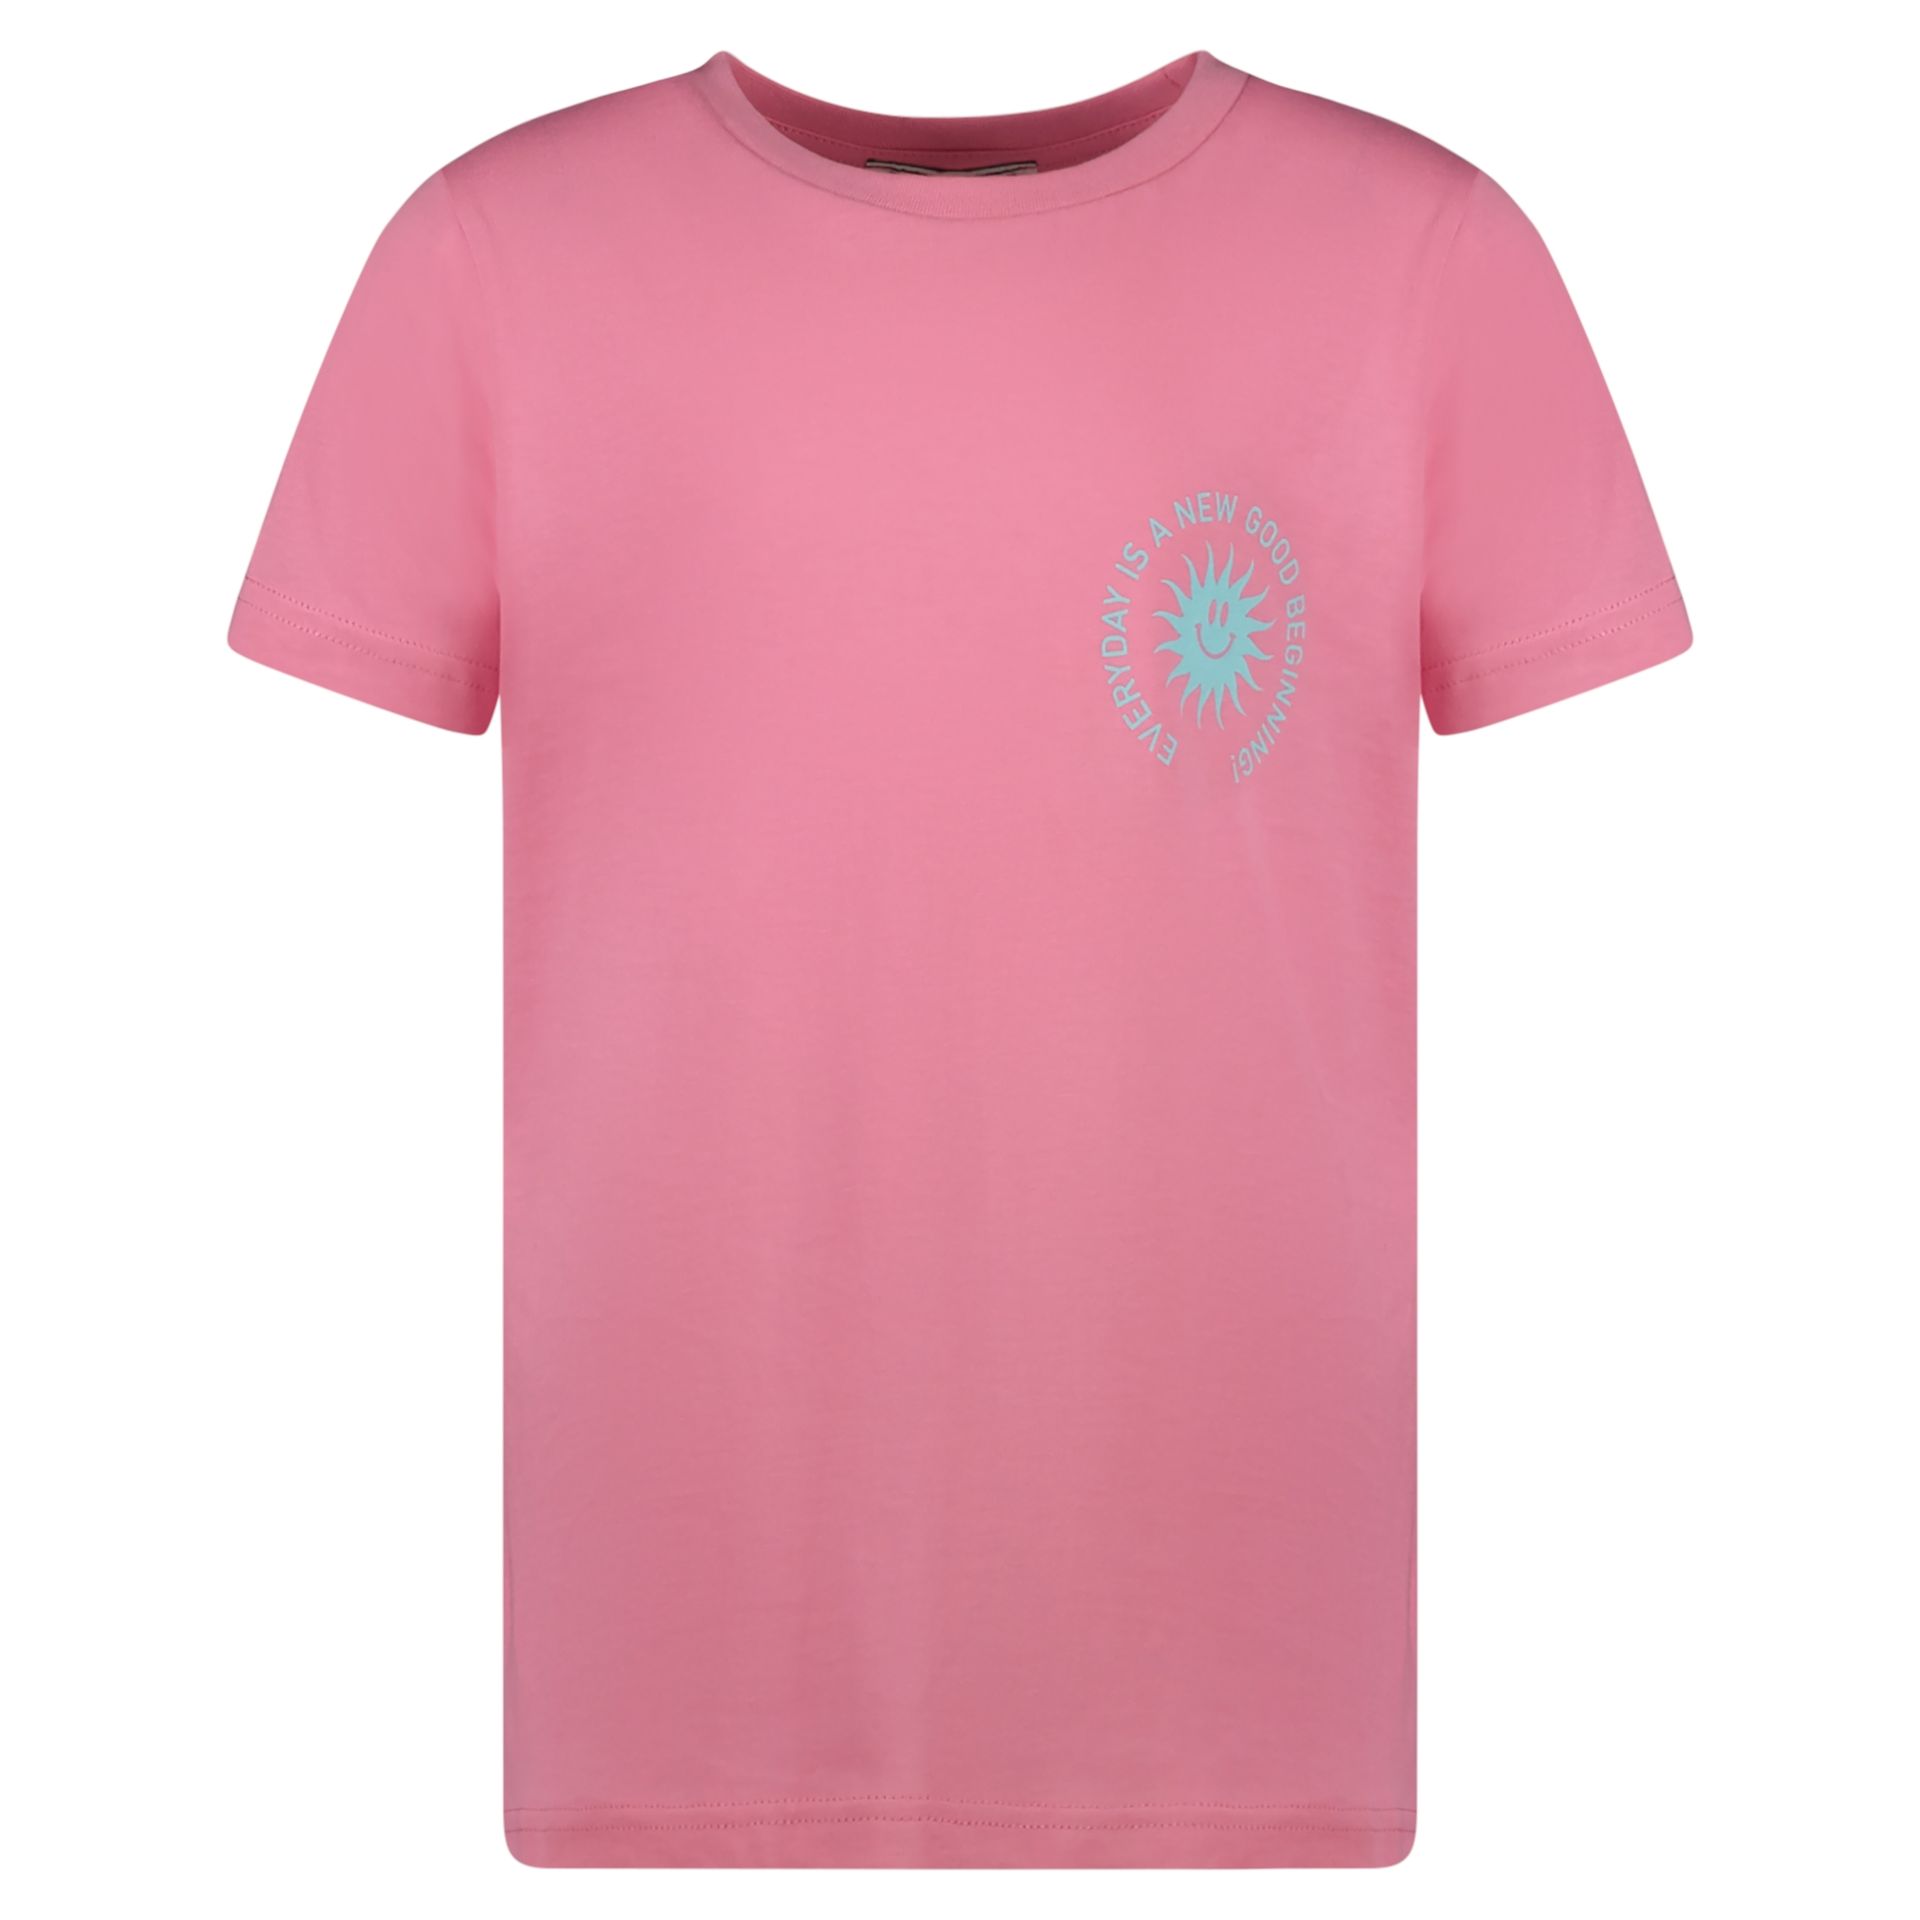 Cars Meisjes T-shirt Kyi Jr. 68 soft pink 2900148107013